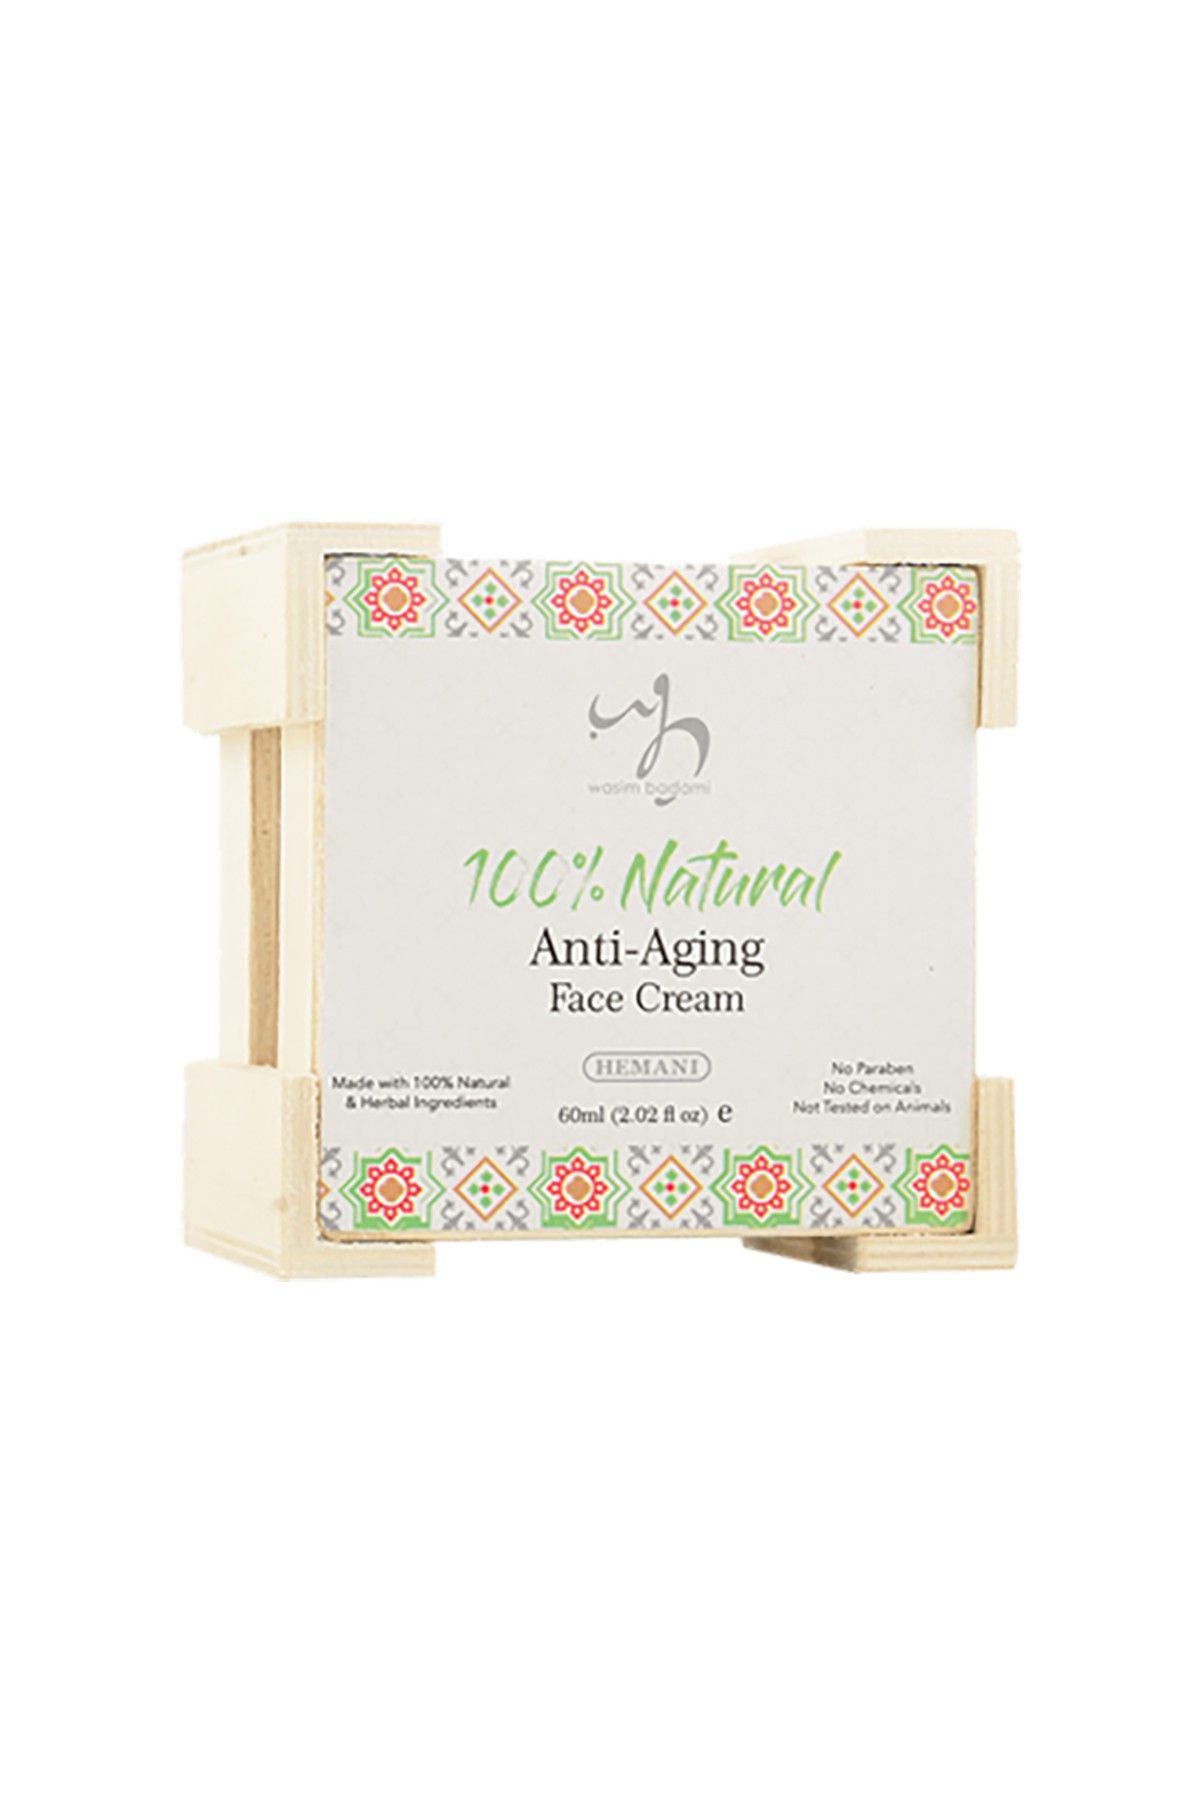 100% Natural Anti Aging Face Cream